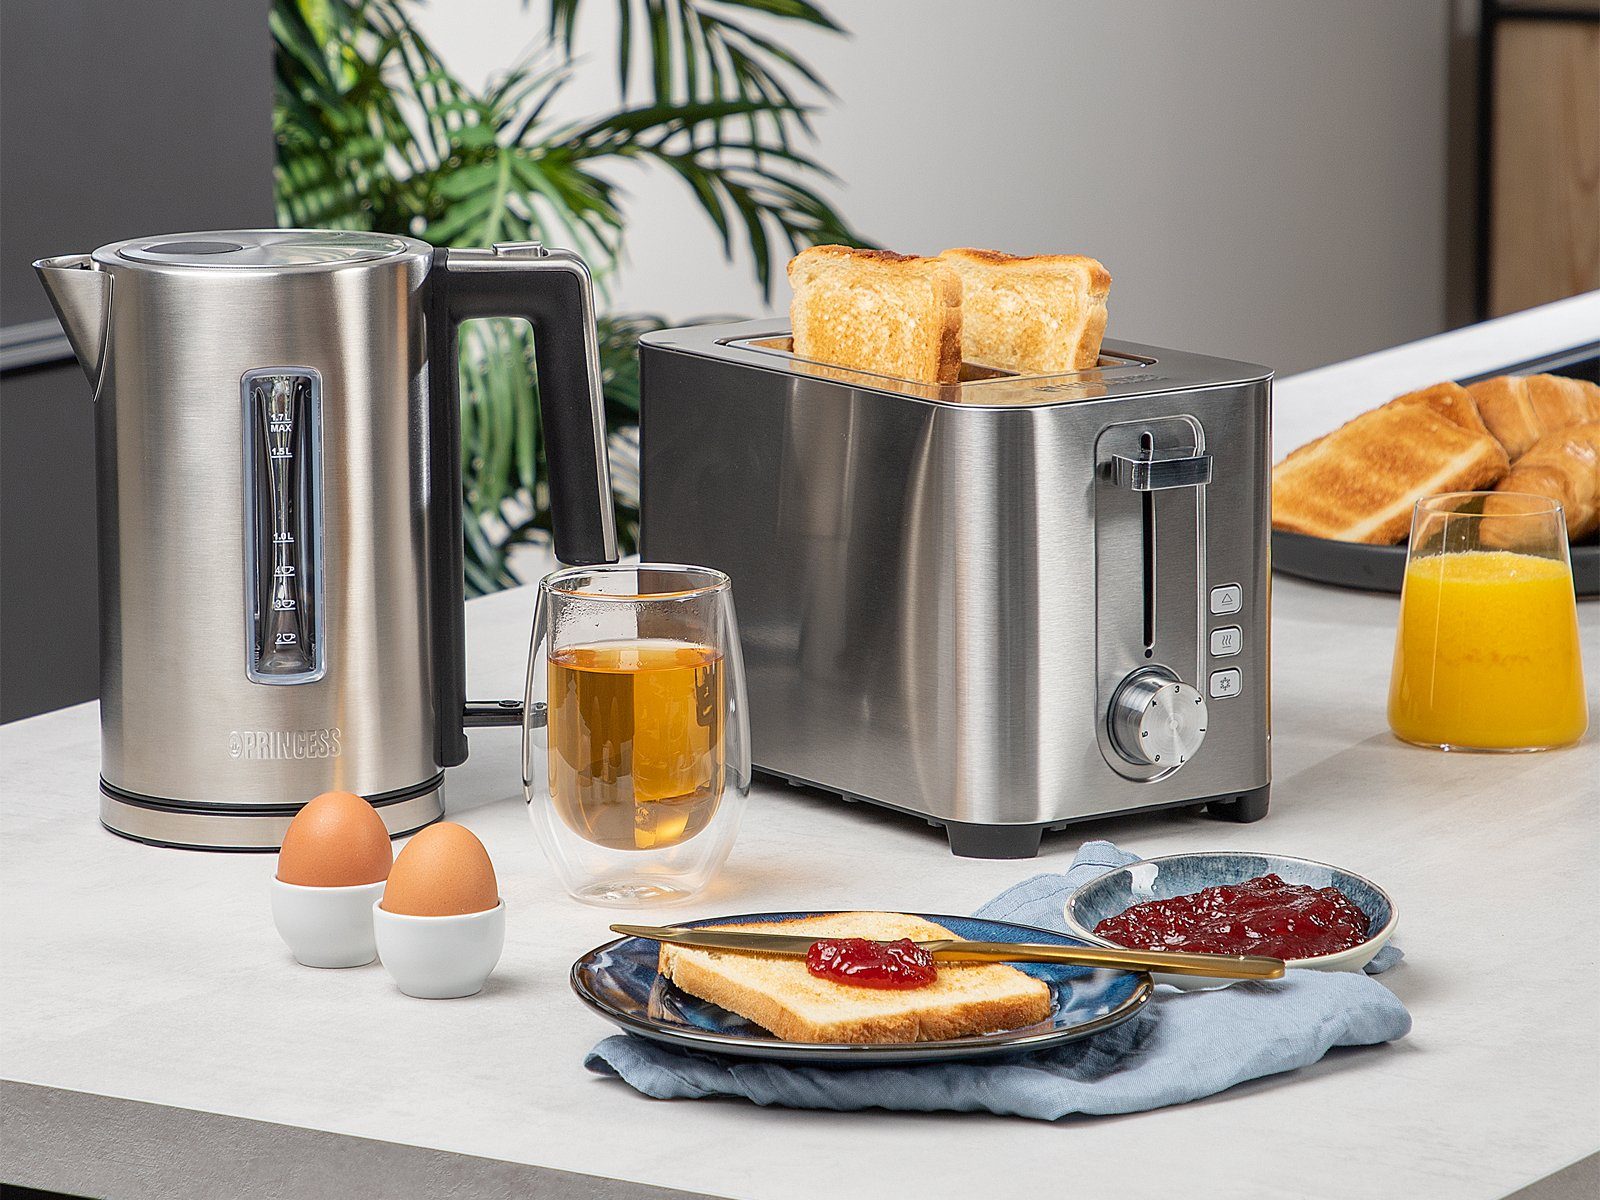 PRINCESS Toaster, Doppelschlitz, 850 W, Frühstück-SET Doppelschlitz  Toastmaschine & 1,7 Liter Wasserkocher ohne Kabel